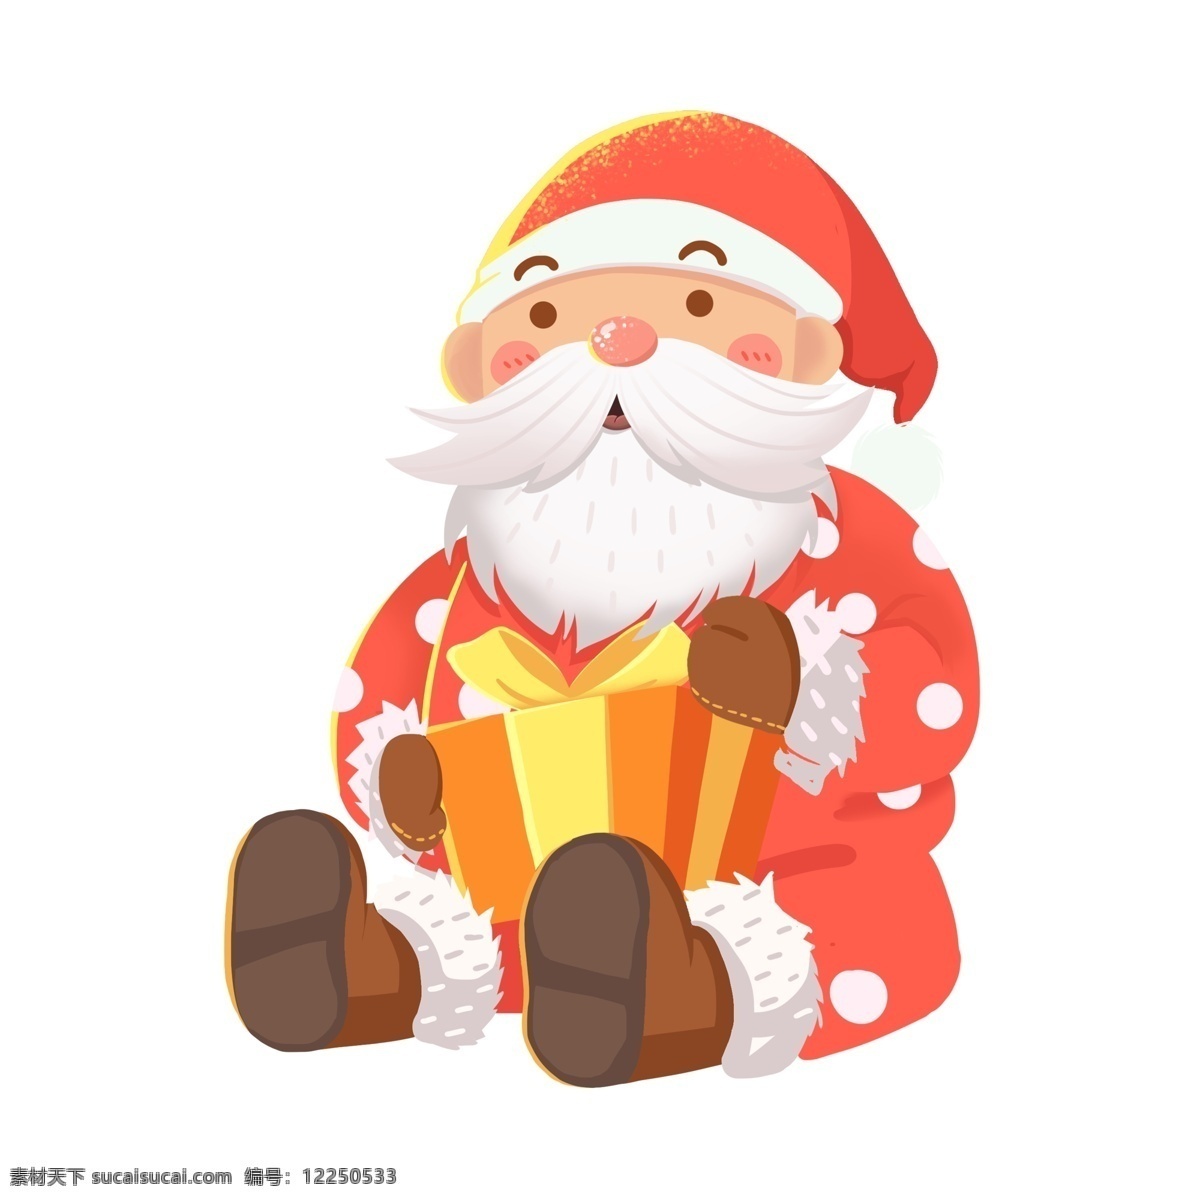 手绘 抱 礼物 坐在 地上 圣诞老人 小清新 节日 圣诞节 插画 卡通手绘